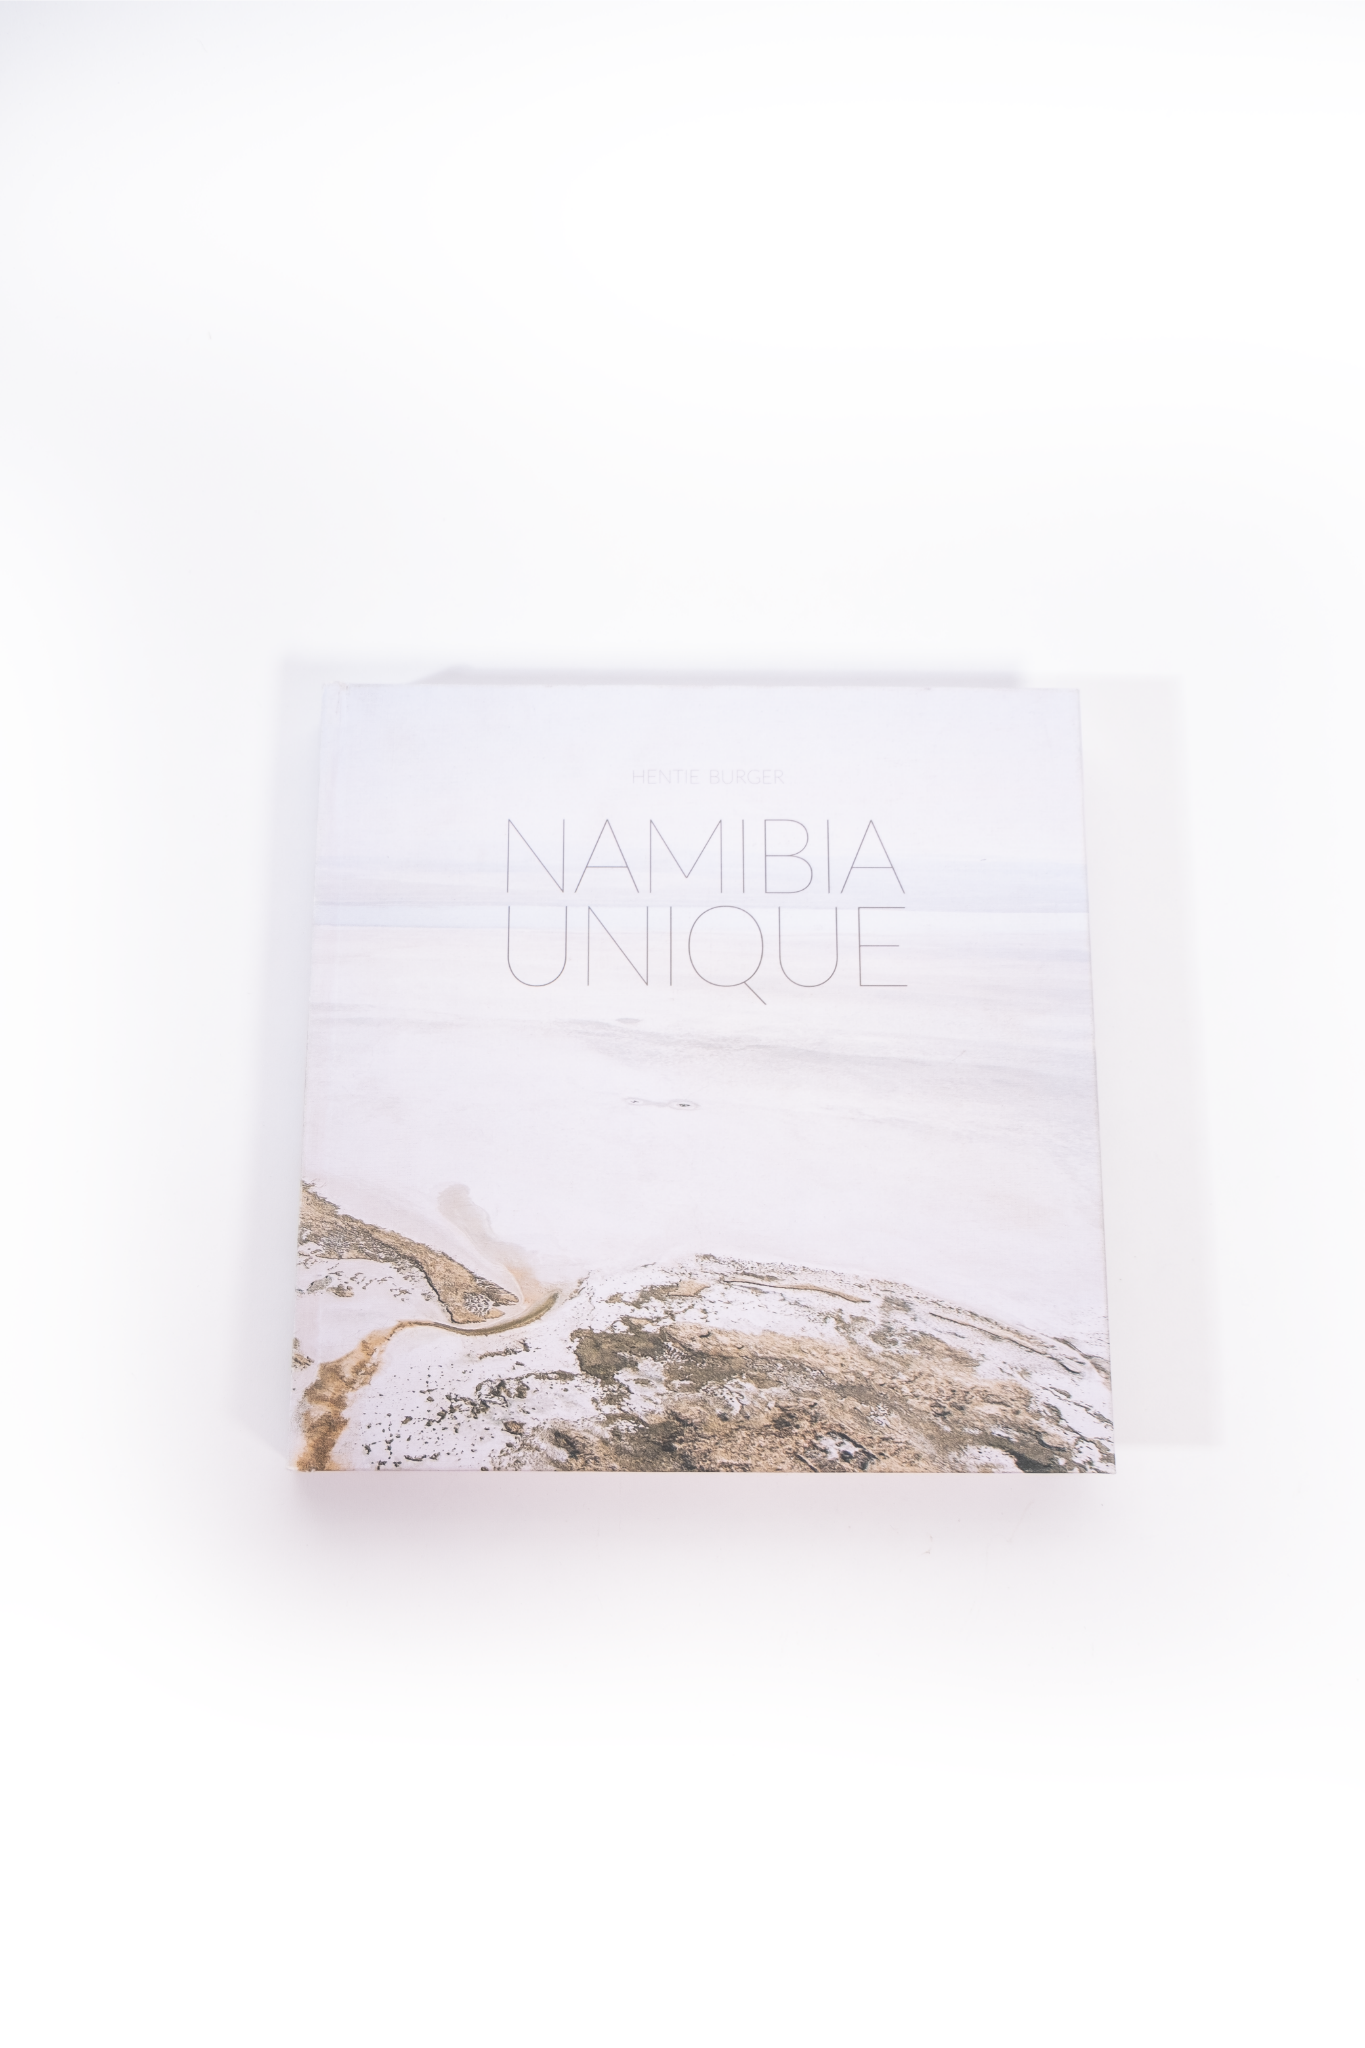 Namibia Unique Book